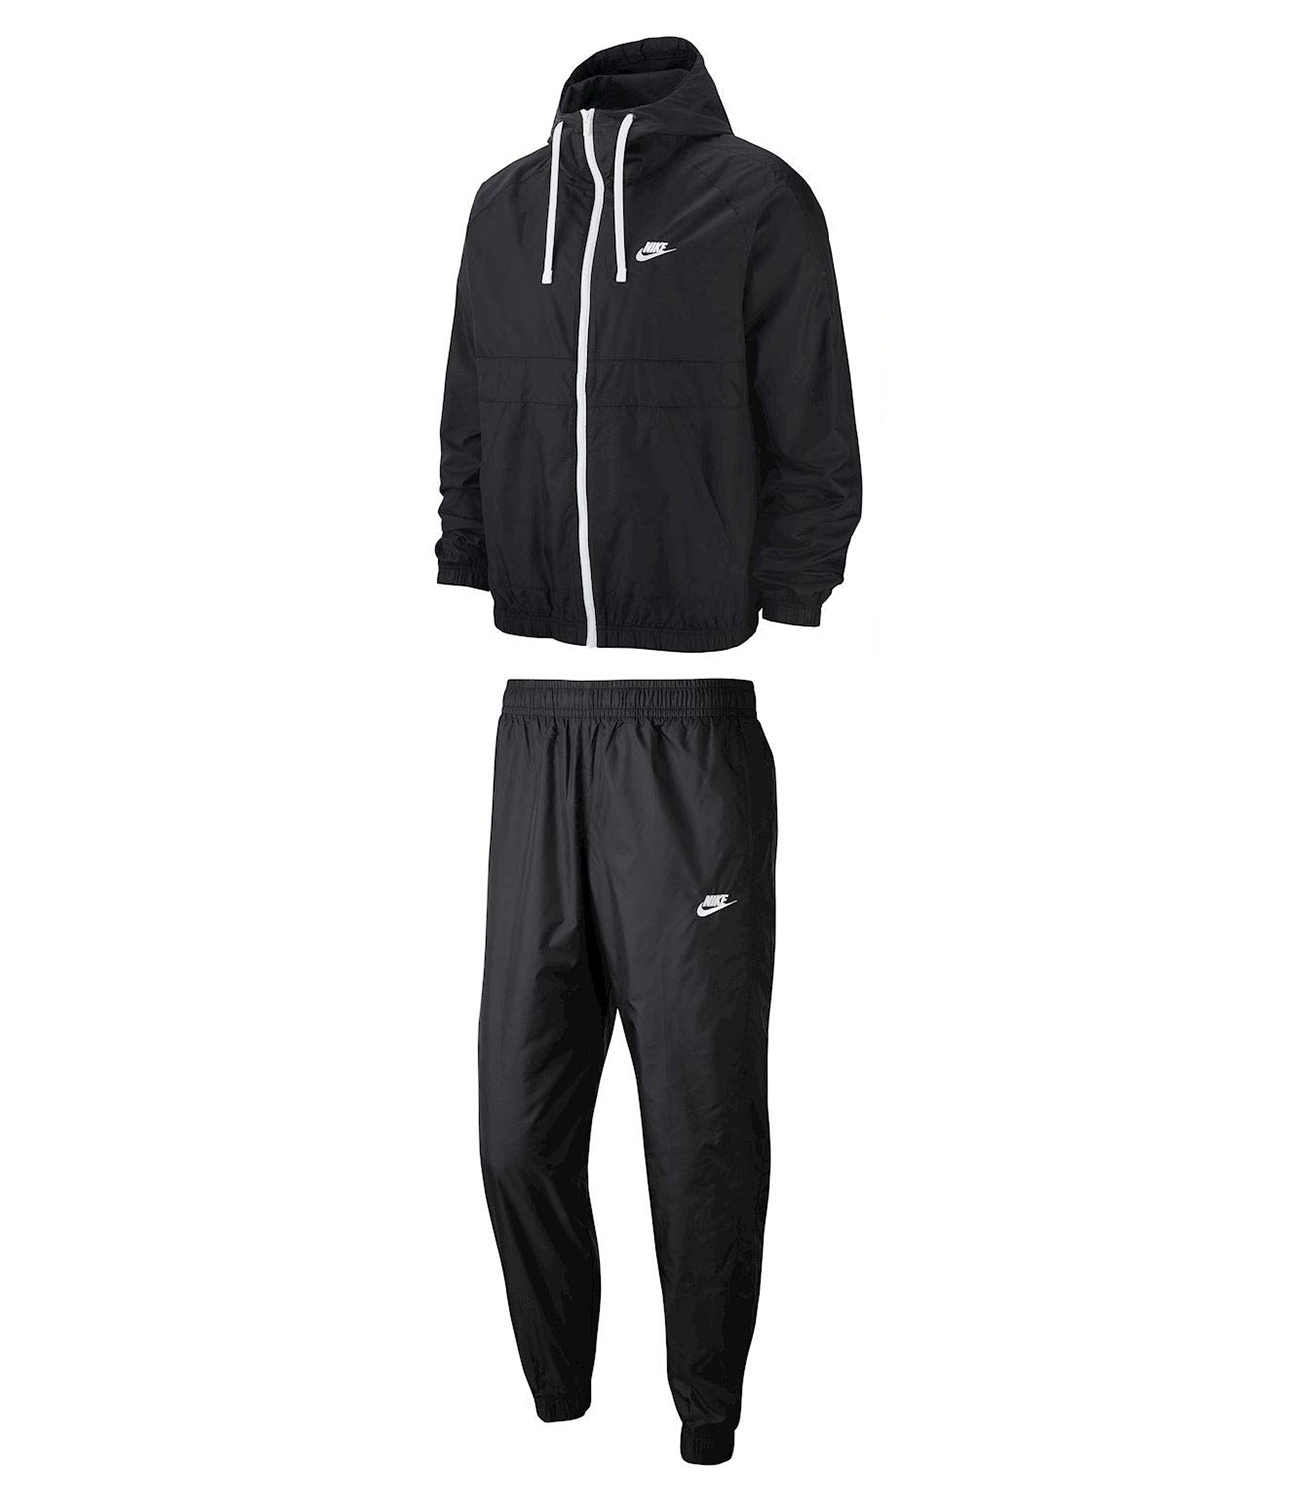 Спортивный костюм m. Nike / костюм m NSW ce Trk Suit HD WVN. Nike bv3025-010. Nike найк мужской спортивный костюм bv3025. Костюм Nike NSW ce Trk.